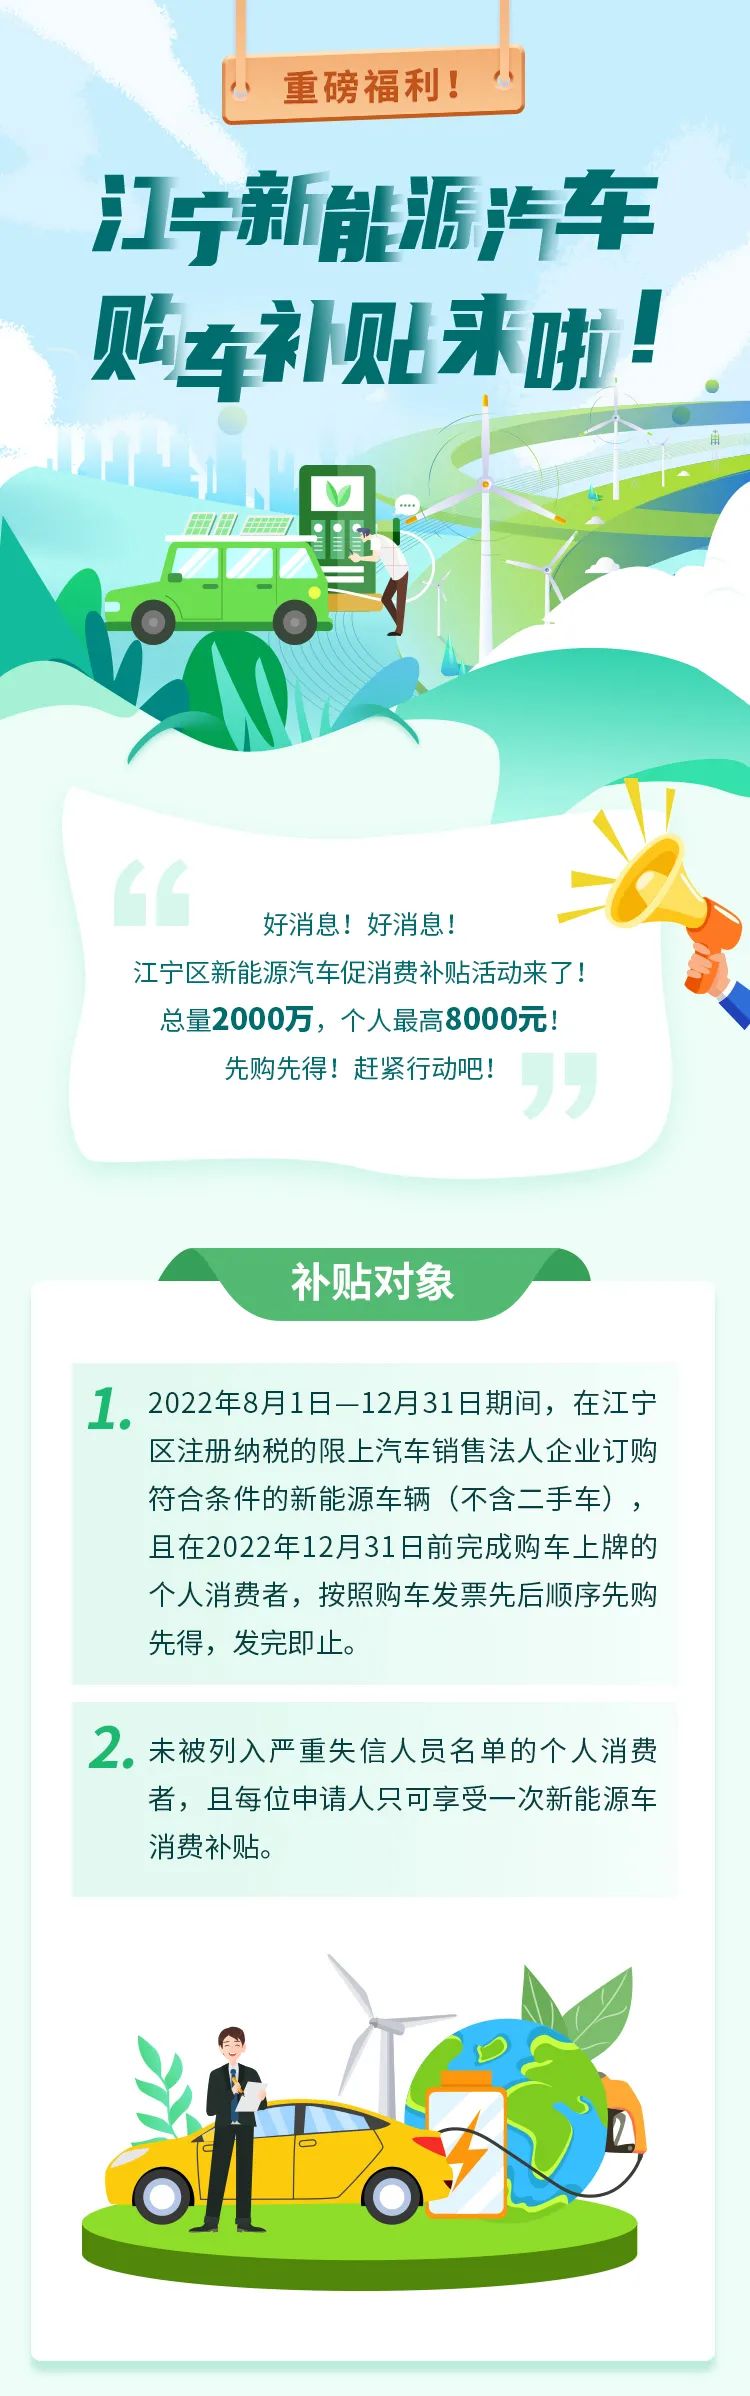 最高补贴1万火狐电竞元新增4万个购车指标广东促汽车消费再发力